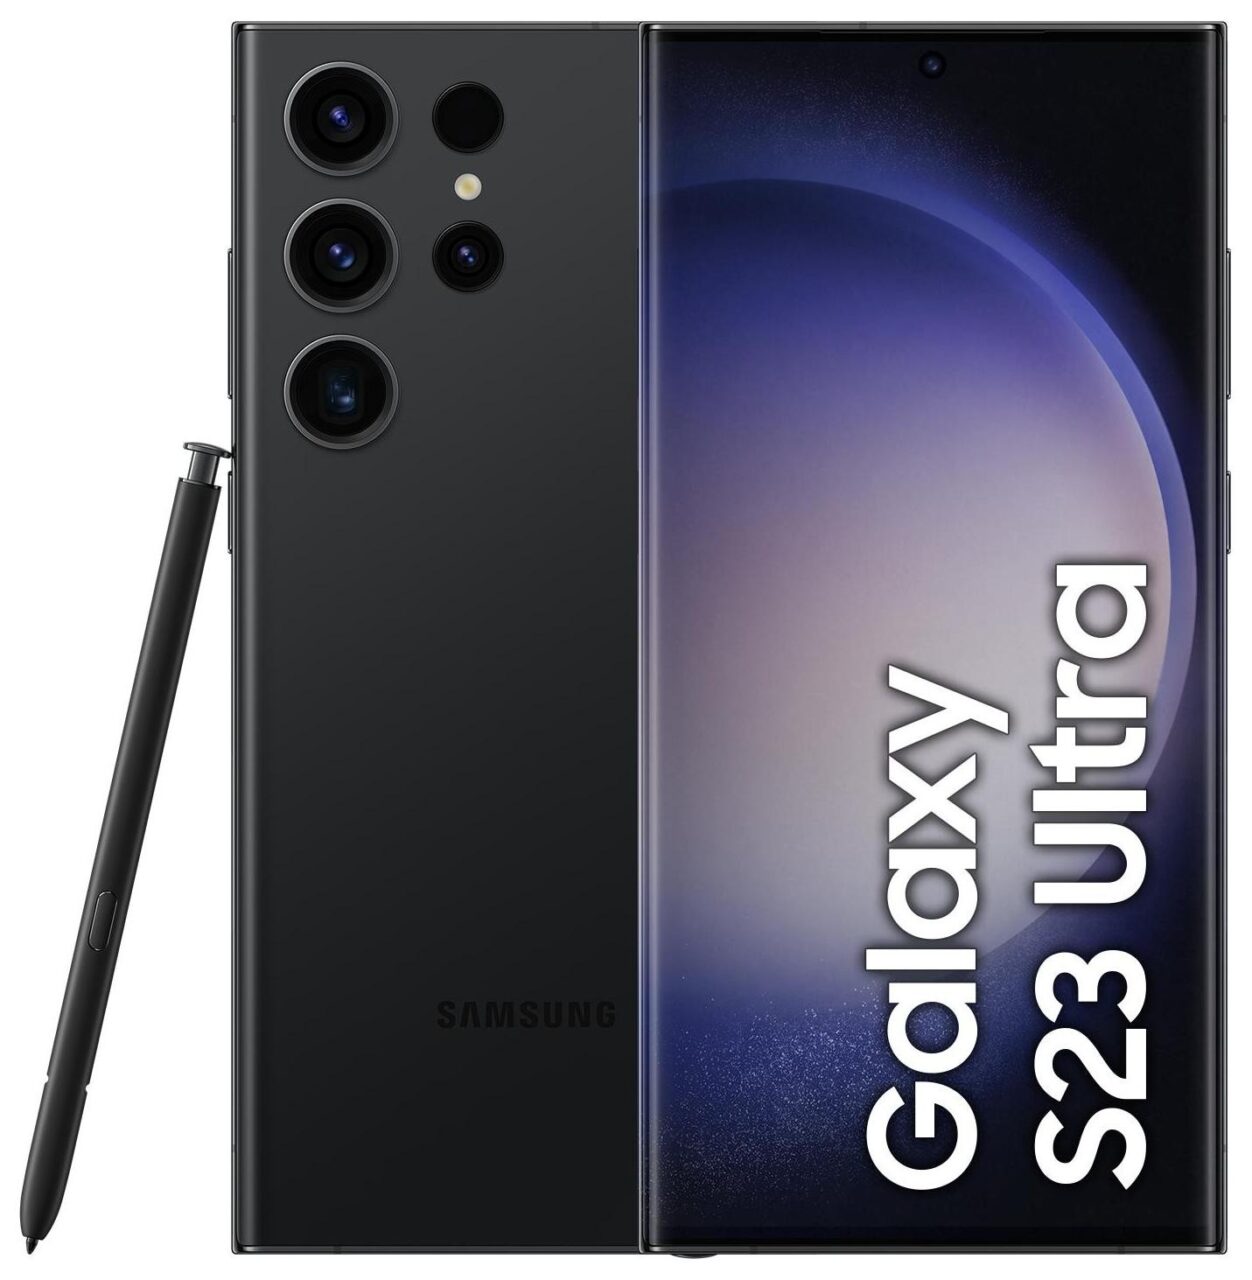 Czarny smartfon Samsung Galaxy S23 Ultra z piórem S Pen obok, przedstawiający pięć obiektywów aparatu z tyłu i ekran z nazwą modelu.